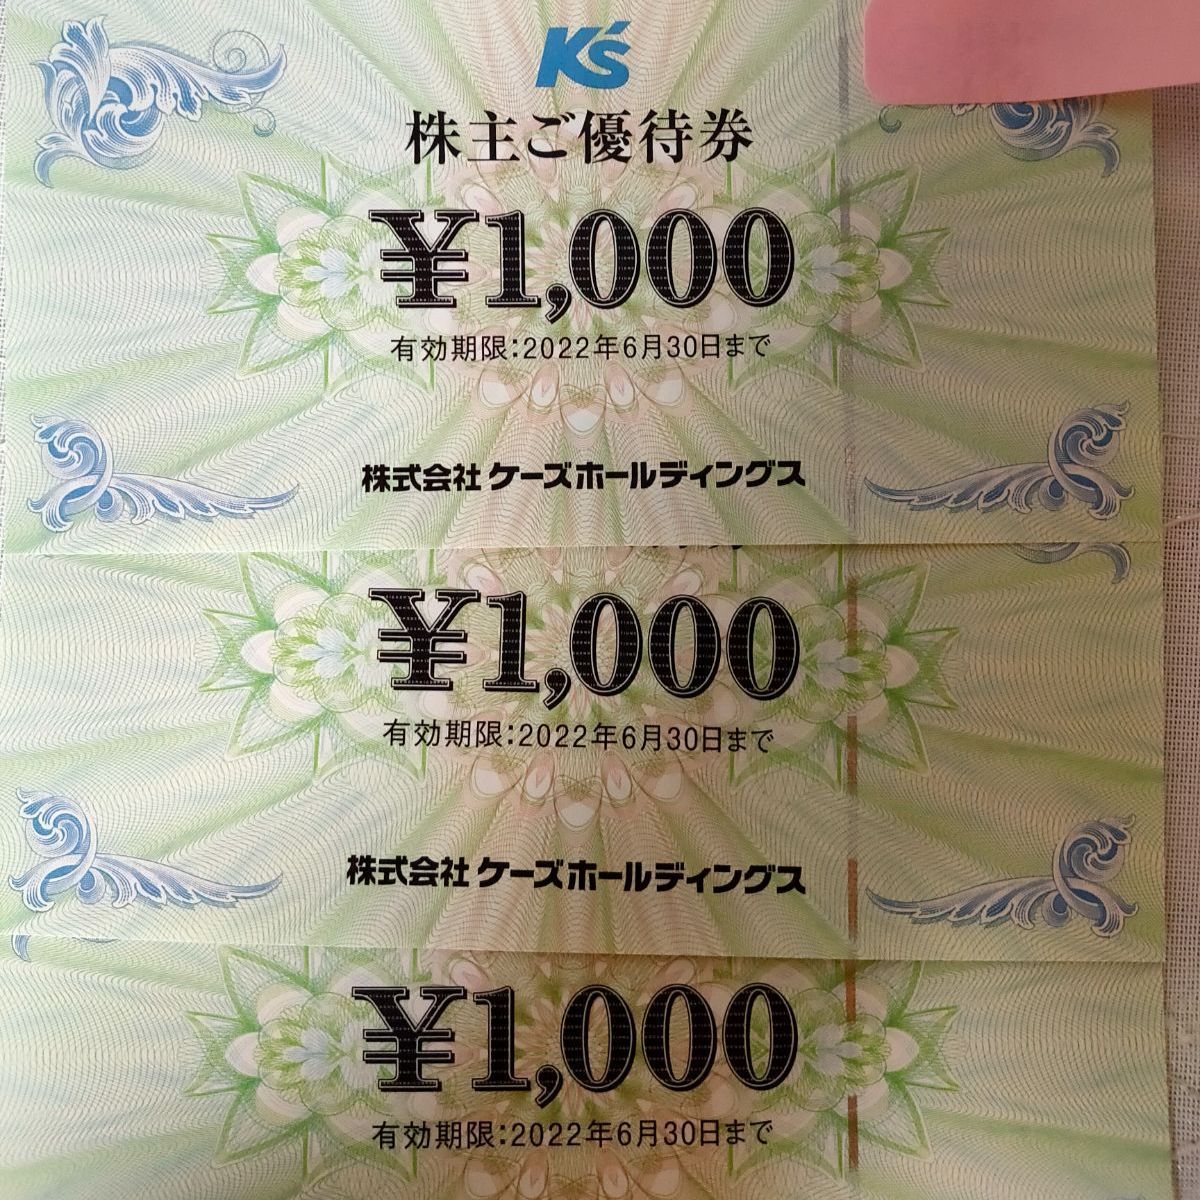 ケーズデンキ株主優待 5000円分